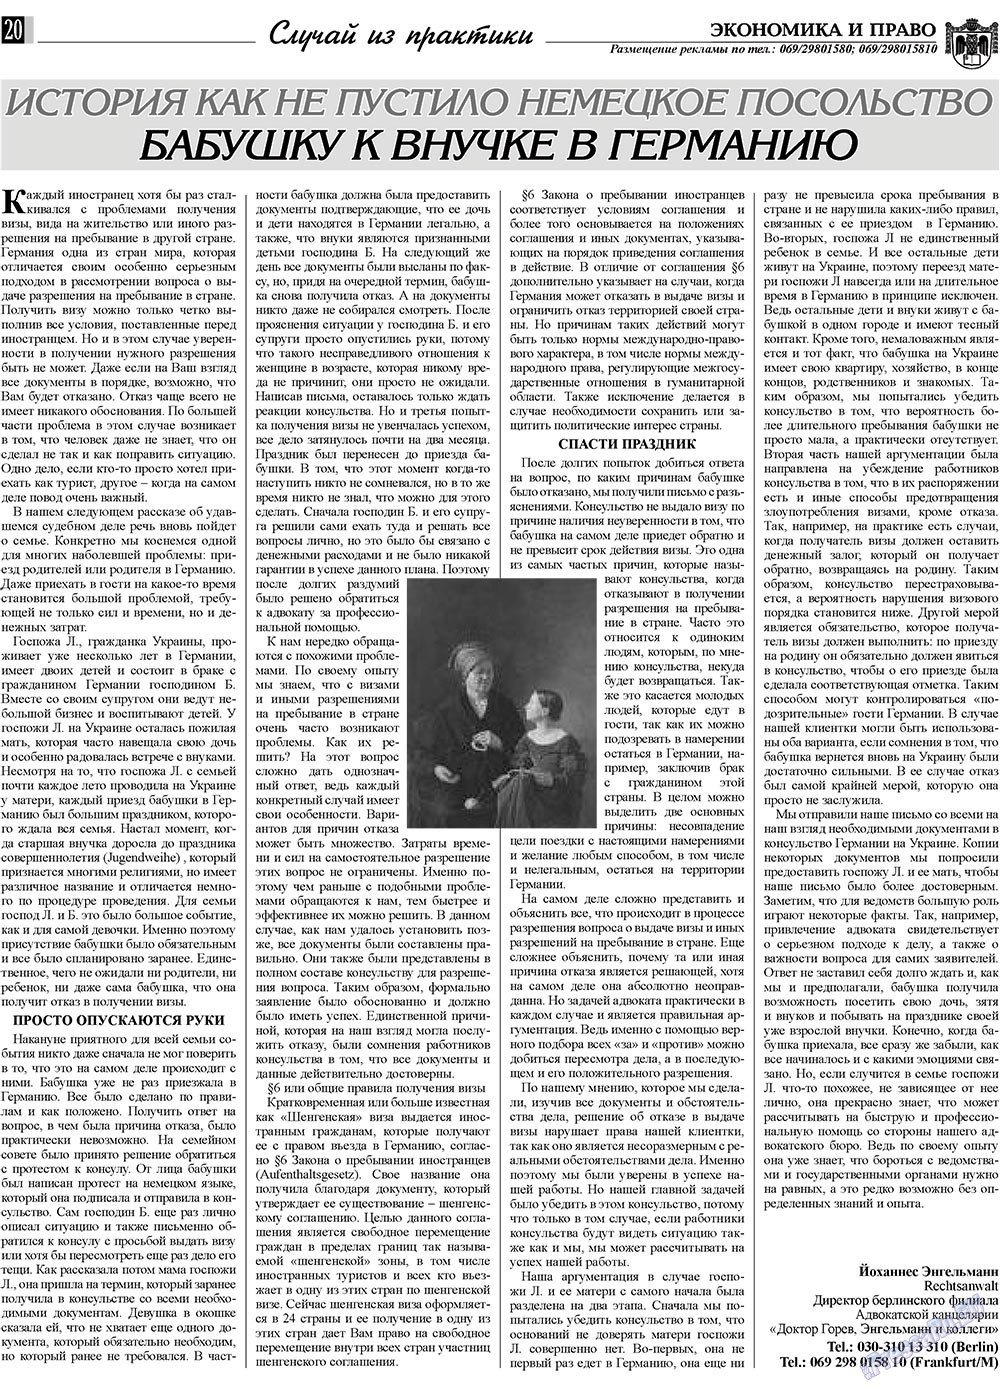 Экономика и право, газета. 2010 №3 стр.20